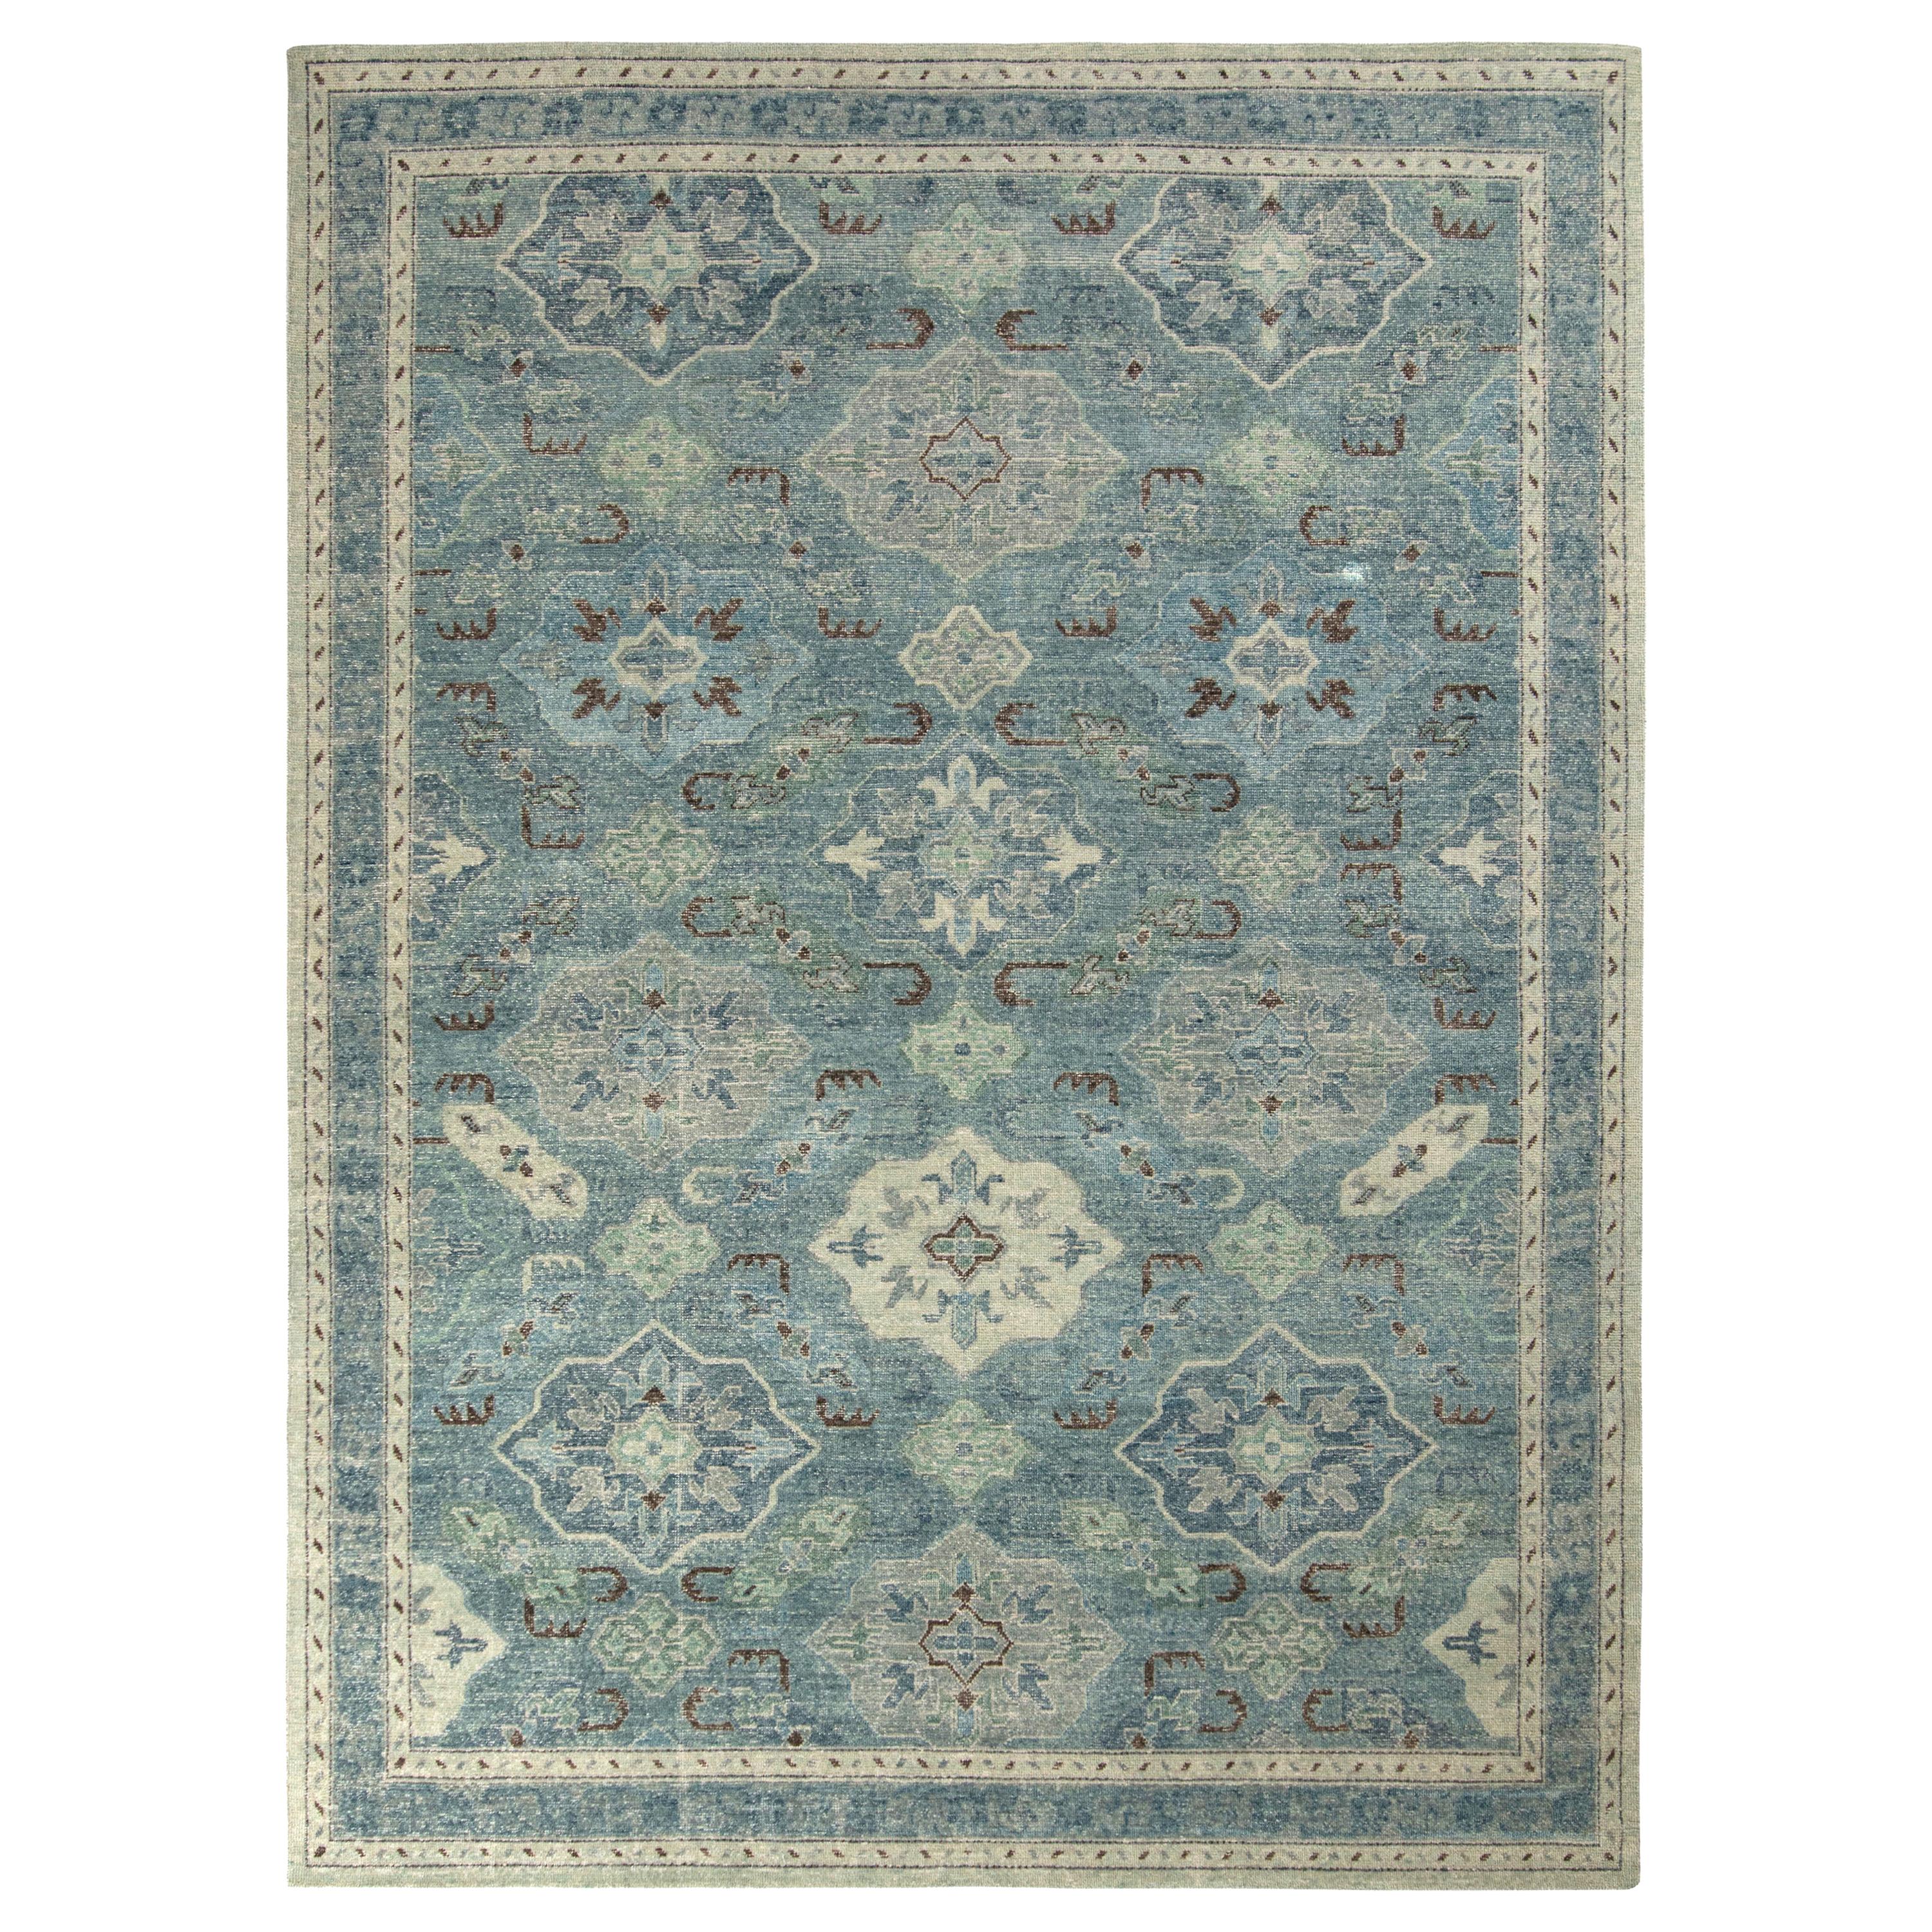 Teppich & Kilims Distressed im klassischen Stil in Blau und Grau mit geometrischem Muster